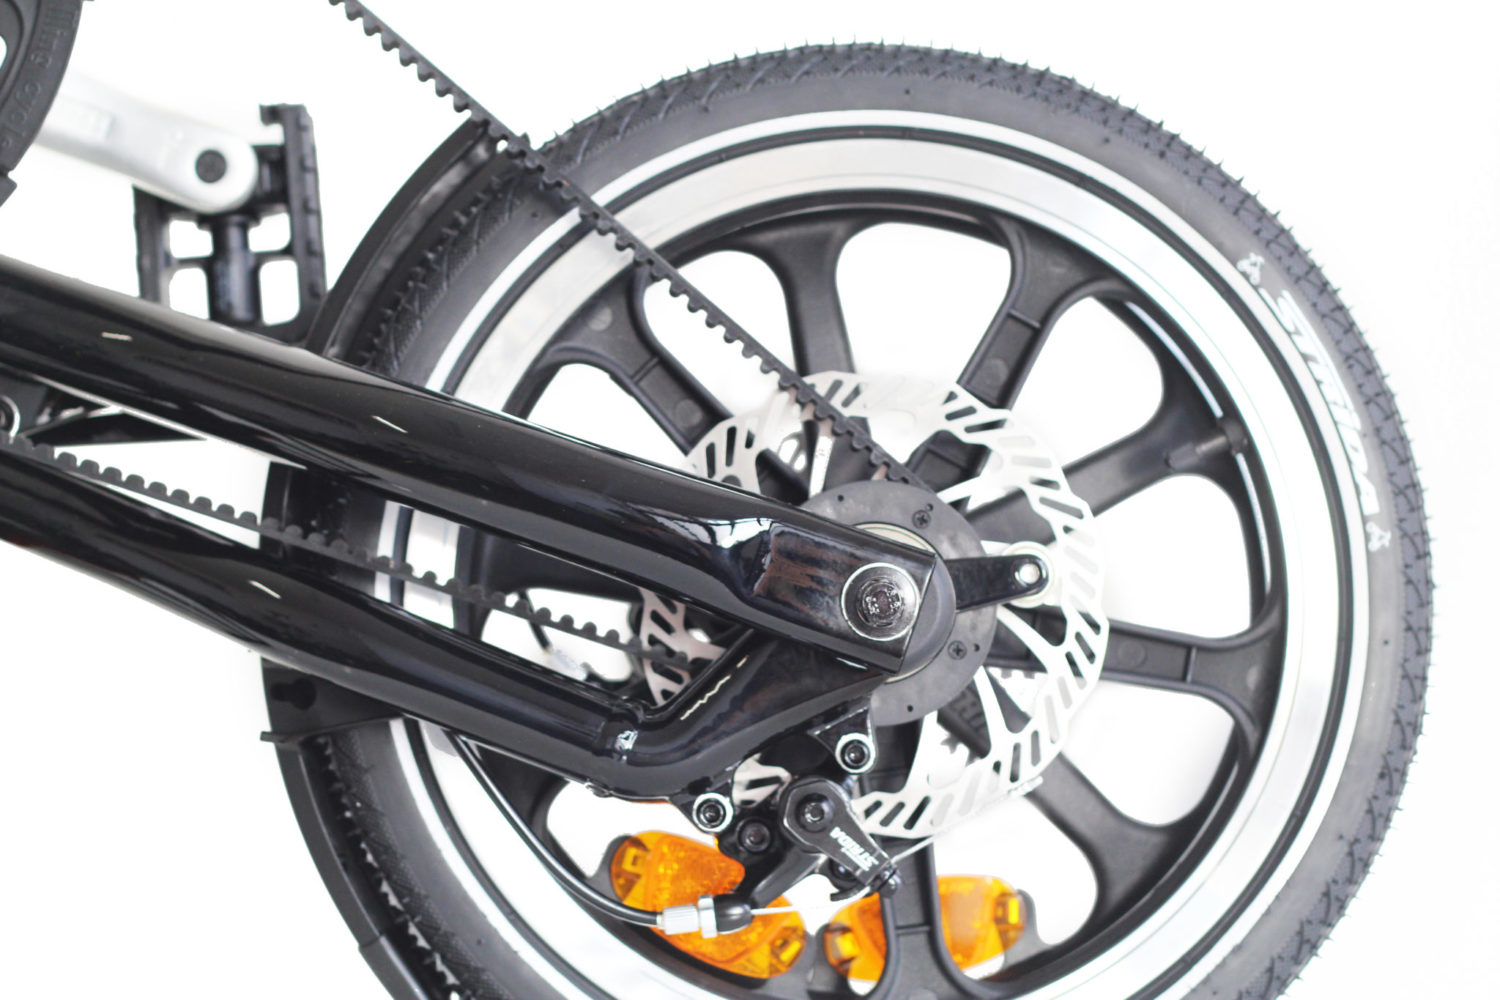 STRIDA LT Jet Black - 16 pouces - à vendre - acheter - Acheter des vélos pliables - Acheter des vélos pliants - Acheter un vélo pliable - Acheter un vélo pliant - forme triangulaire - fr - Léger - lt - Magasin - Magasin de vélo pliant - nouveau - strida - triangulaire - vélo - vélo compact - Vélo design - vélo pliable - vélo pliant - Vélo pliant design - vélo pliant design strida - Vélo pliant triangulaire - vélo pliant unique - Vélos pliable - Vélos pliants - Vitesse unique